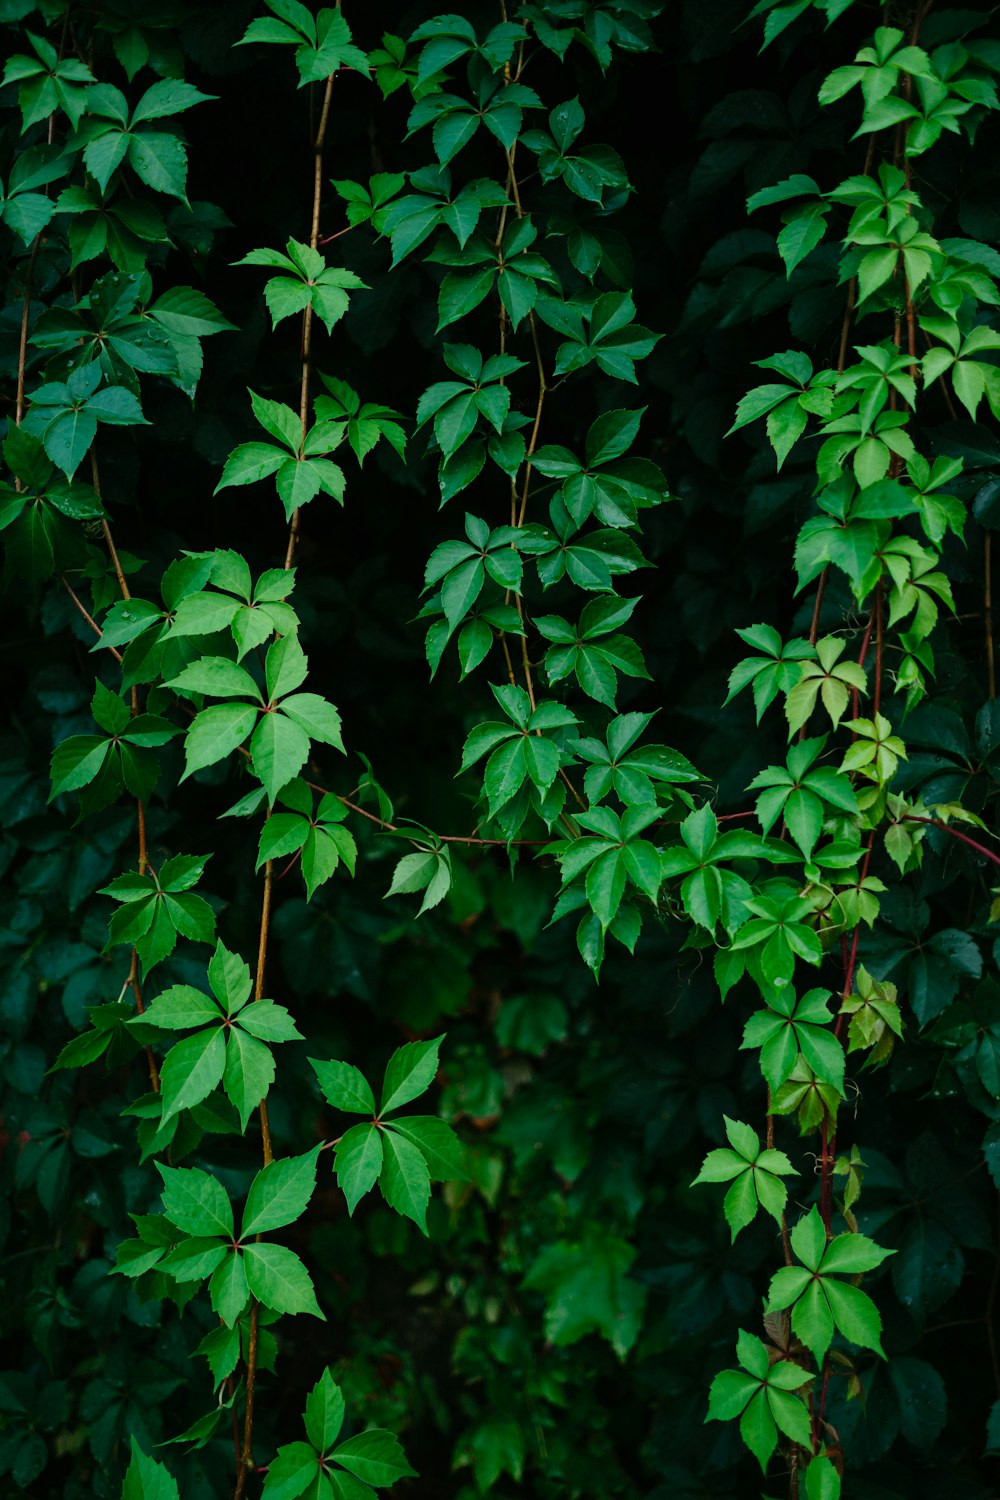 녹색 잎이 많은 덩굴 식물